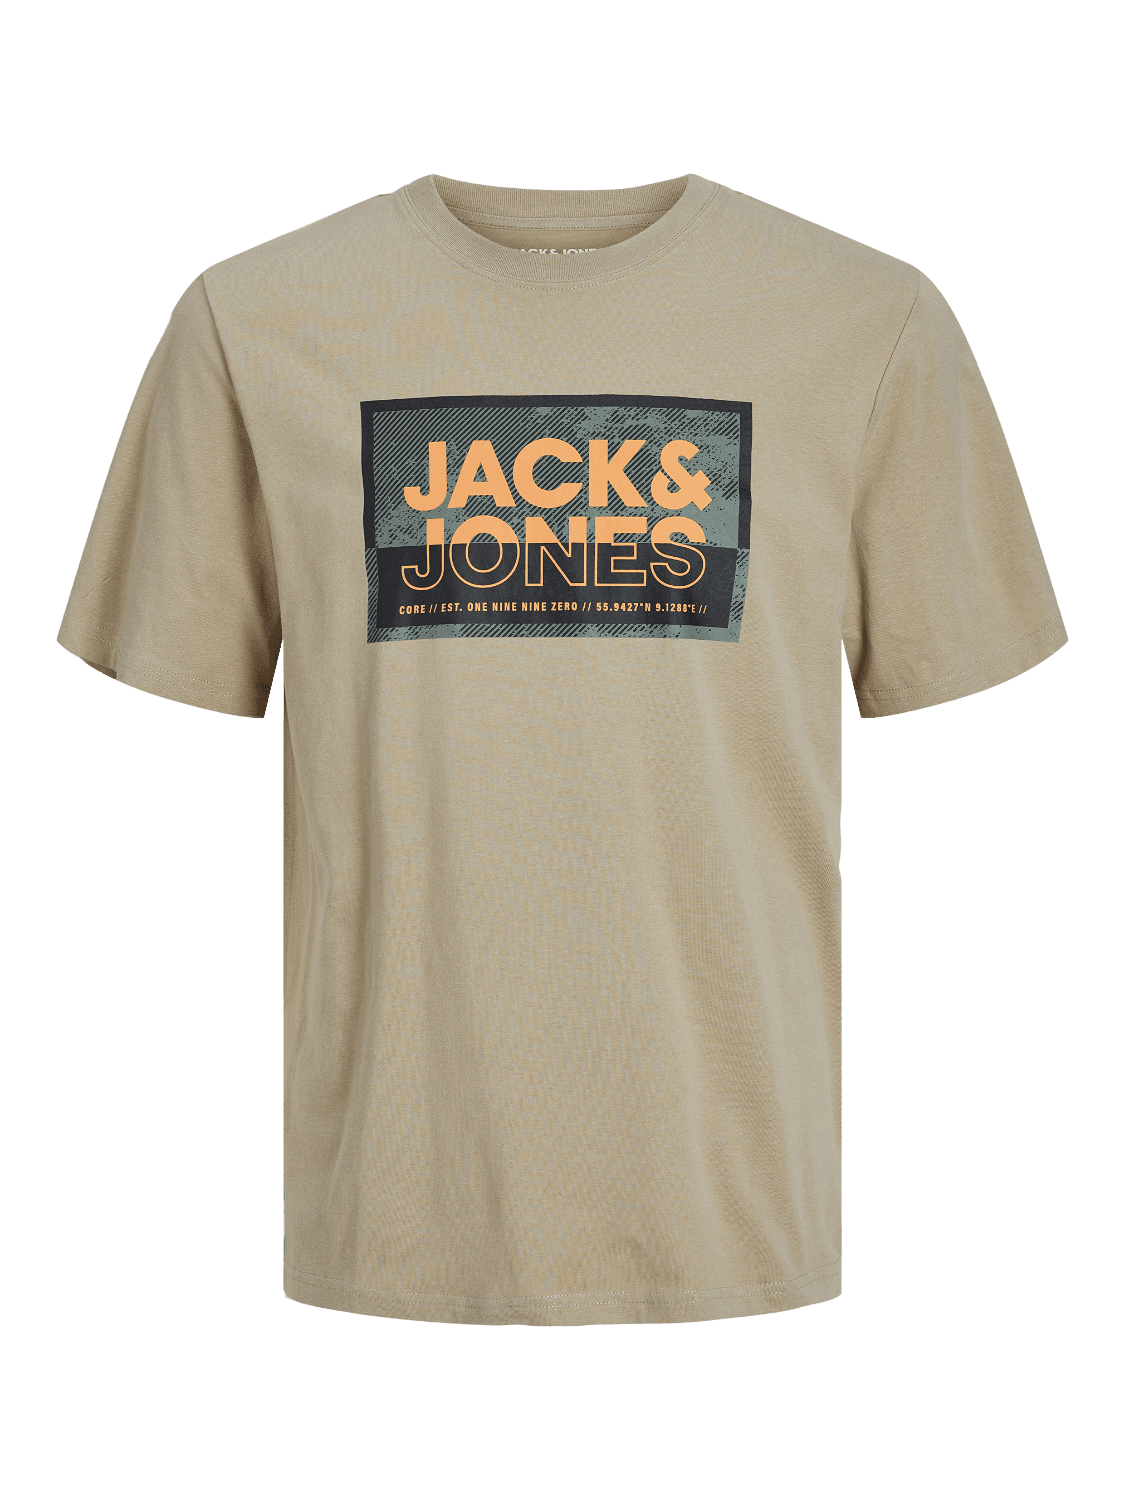 JACK & JONES Muška majica 12253442, Bež